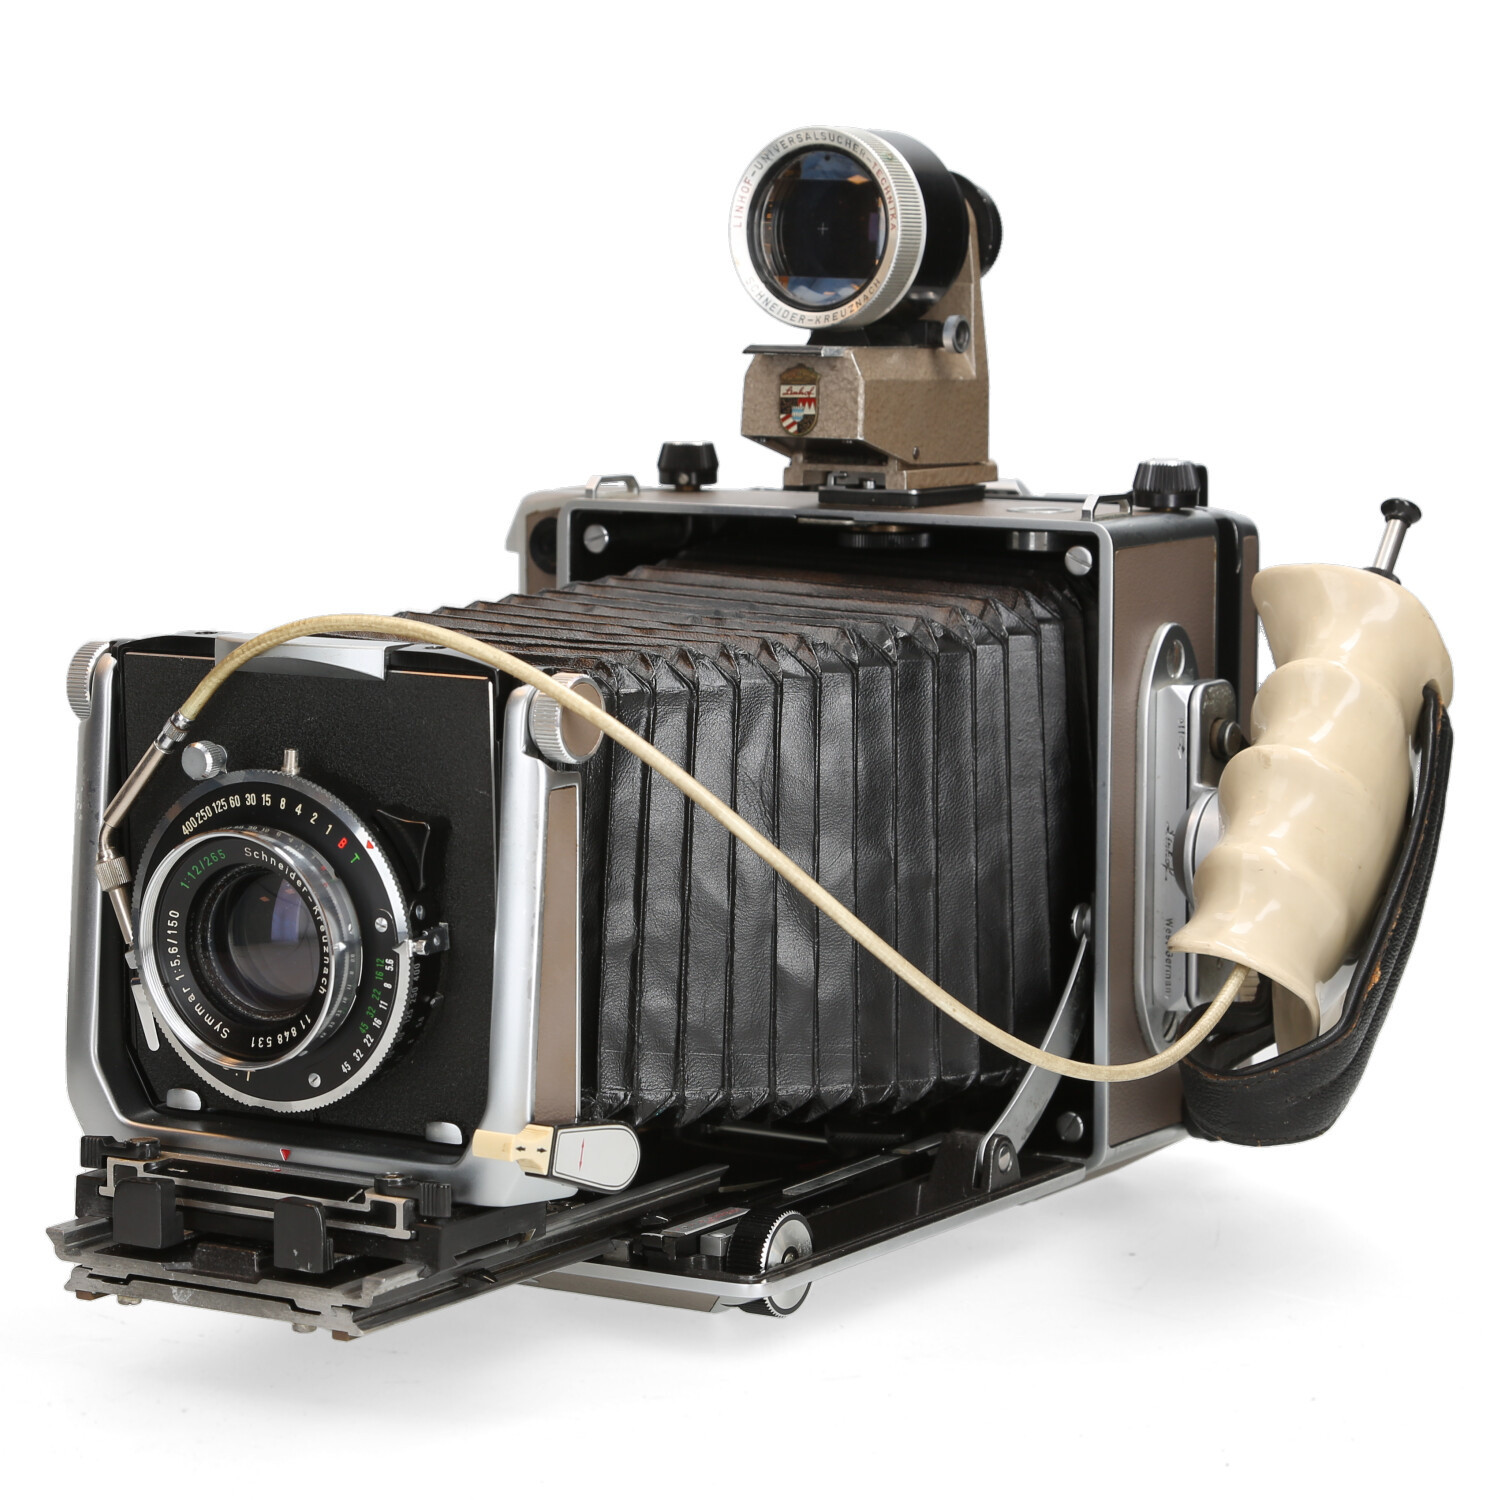 Linhof Linhof 4x5 Super Technica-V camera + Grip Schneider Xenar 150mm f4.5